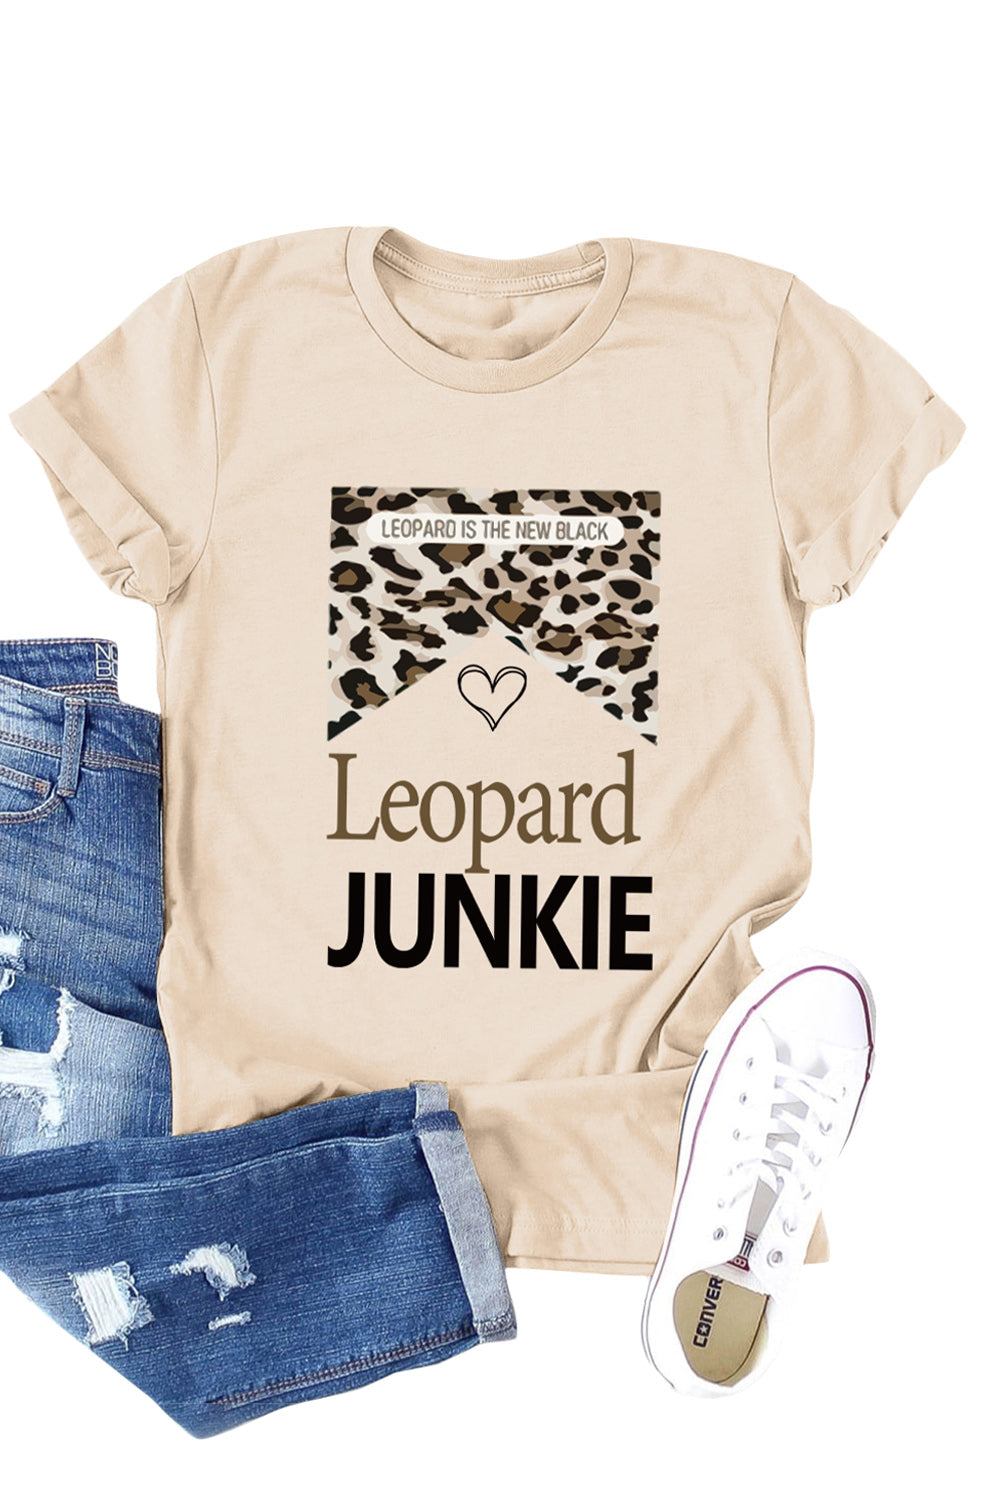 Khaki Leopard JUNKIE Graphic T Shirt